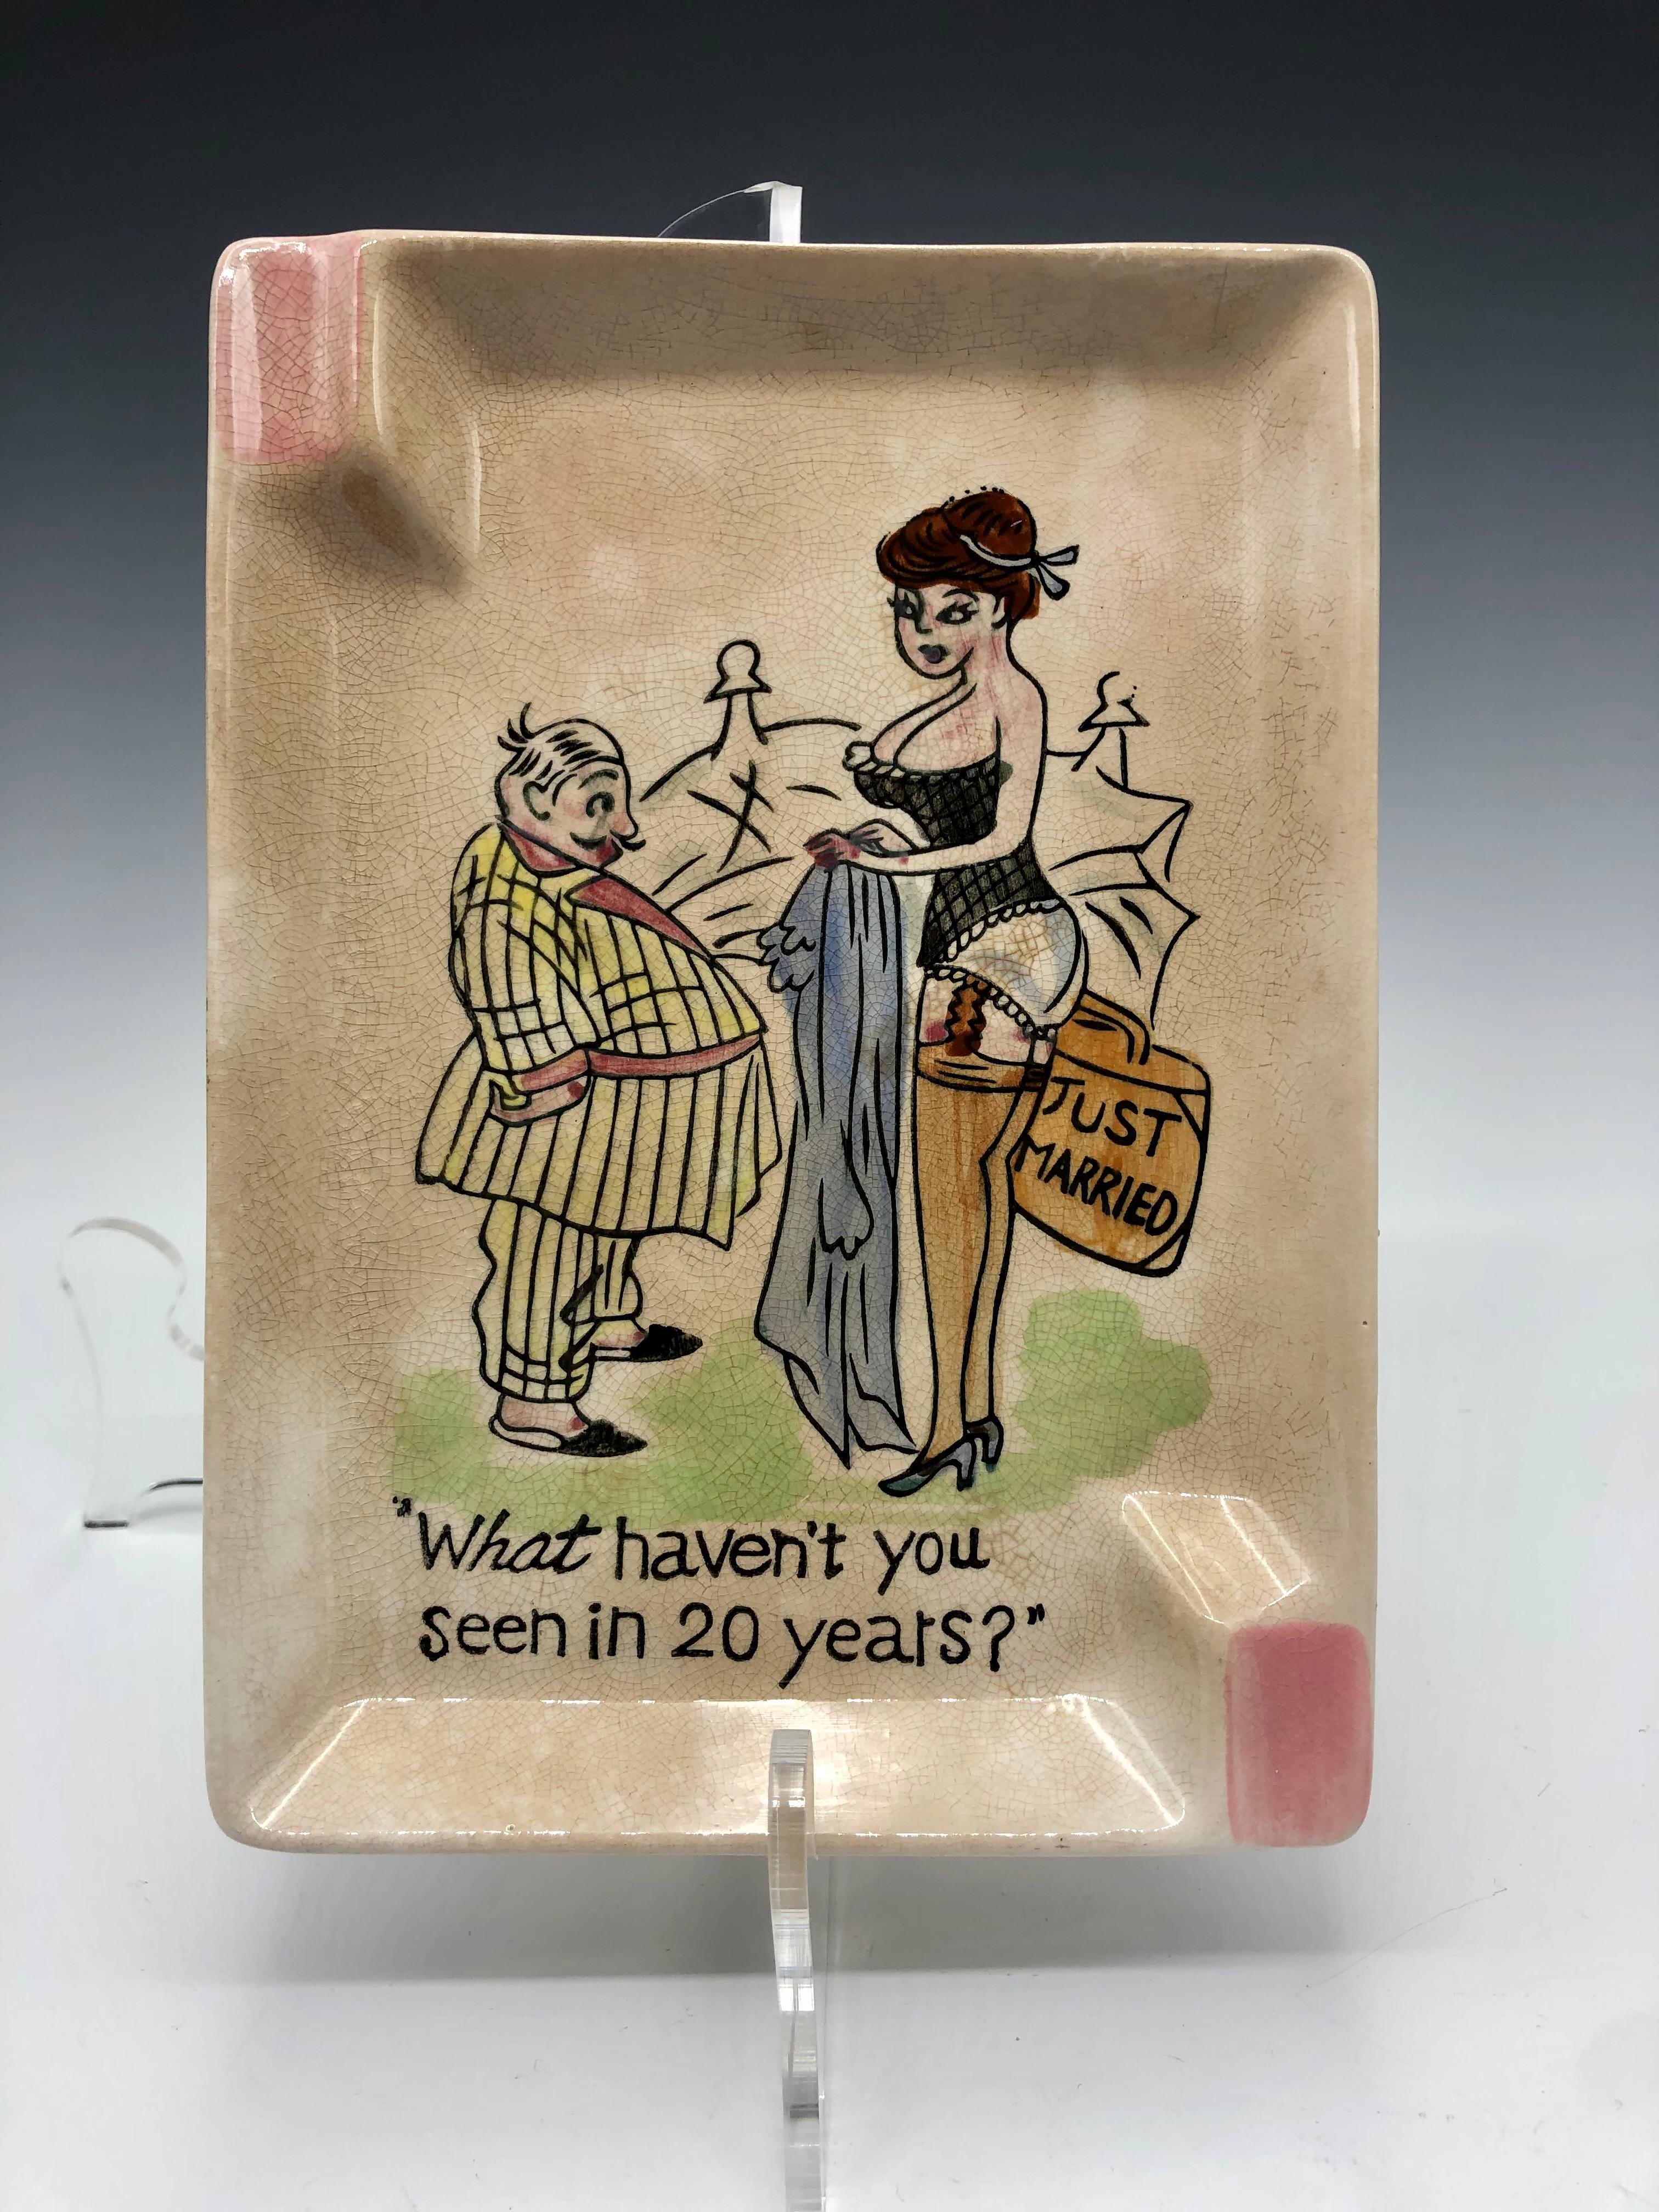 Ein charmanter, kitschig-komischer Nachkriegs-Porzellan-Aschenbecher oder Auffangbehälter, vide-poche. Hergestellt in Japan in den späten 1940er oder frühen 1950er Jahren. Auf der Rückseite ist das originale 